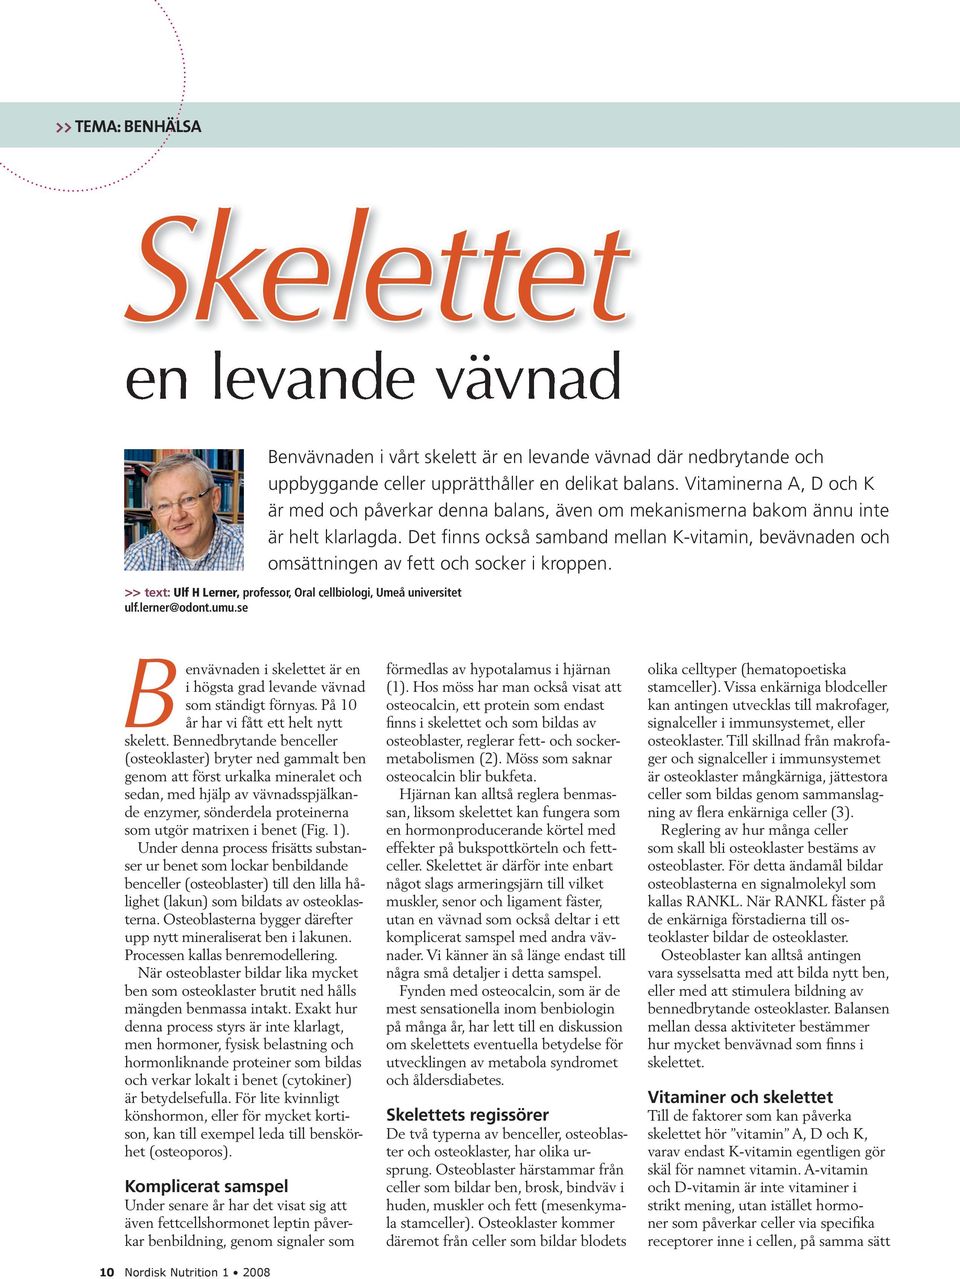 Det finns också samband mellan K-vitamin, bevävnaden och omsättningen av fett och socker i kroppen. >> text: Ulf H Lerner, professor, Oral cellbiologi, Umeå universitet ulf.lerner@odont.umu.